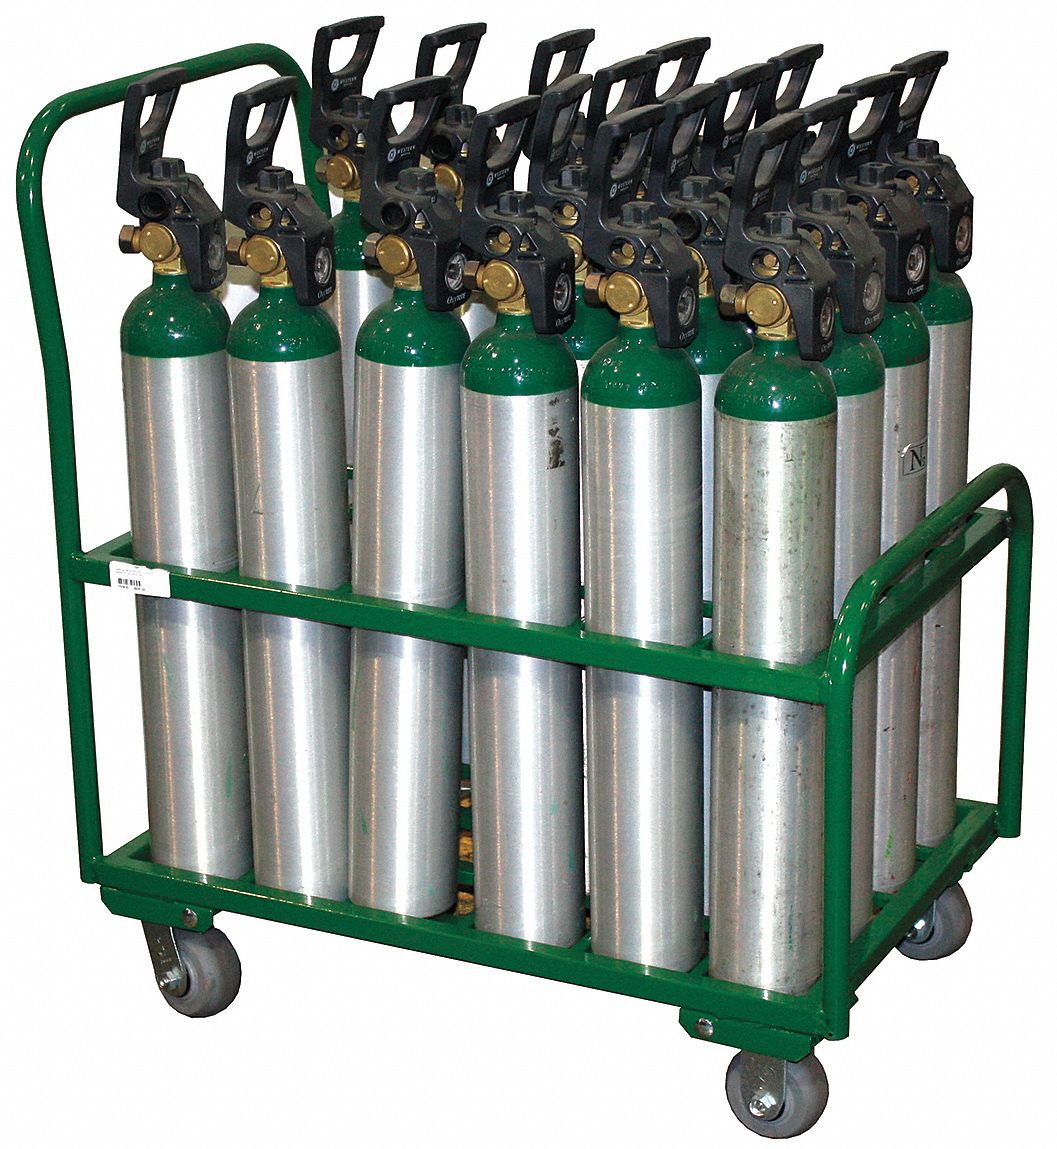 5WXH2 - Cylinder Trolley 34 in W 2400 lb.